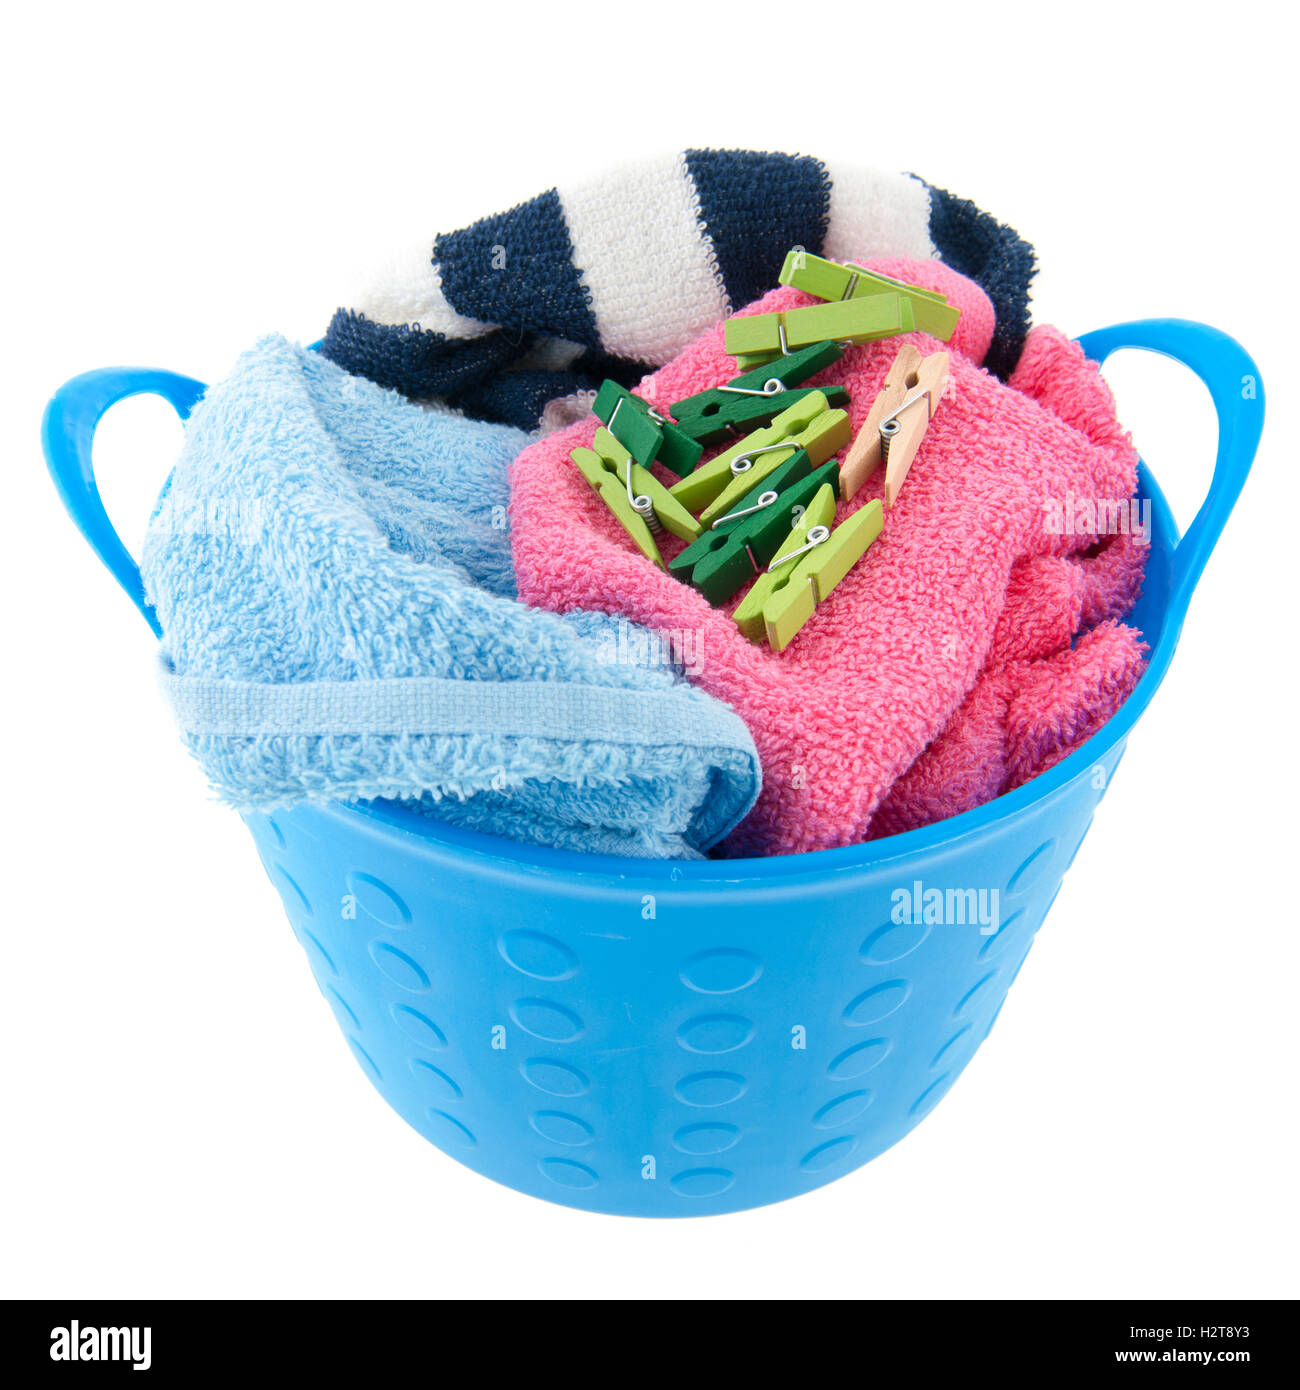 Laundry basket Stock Photo